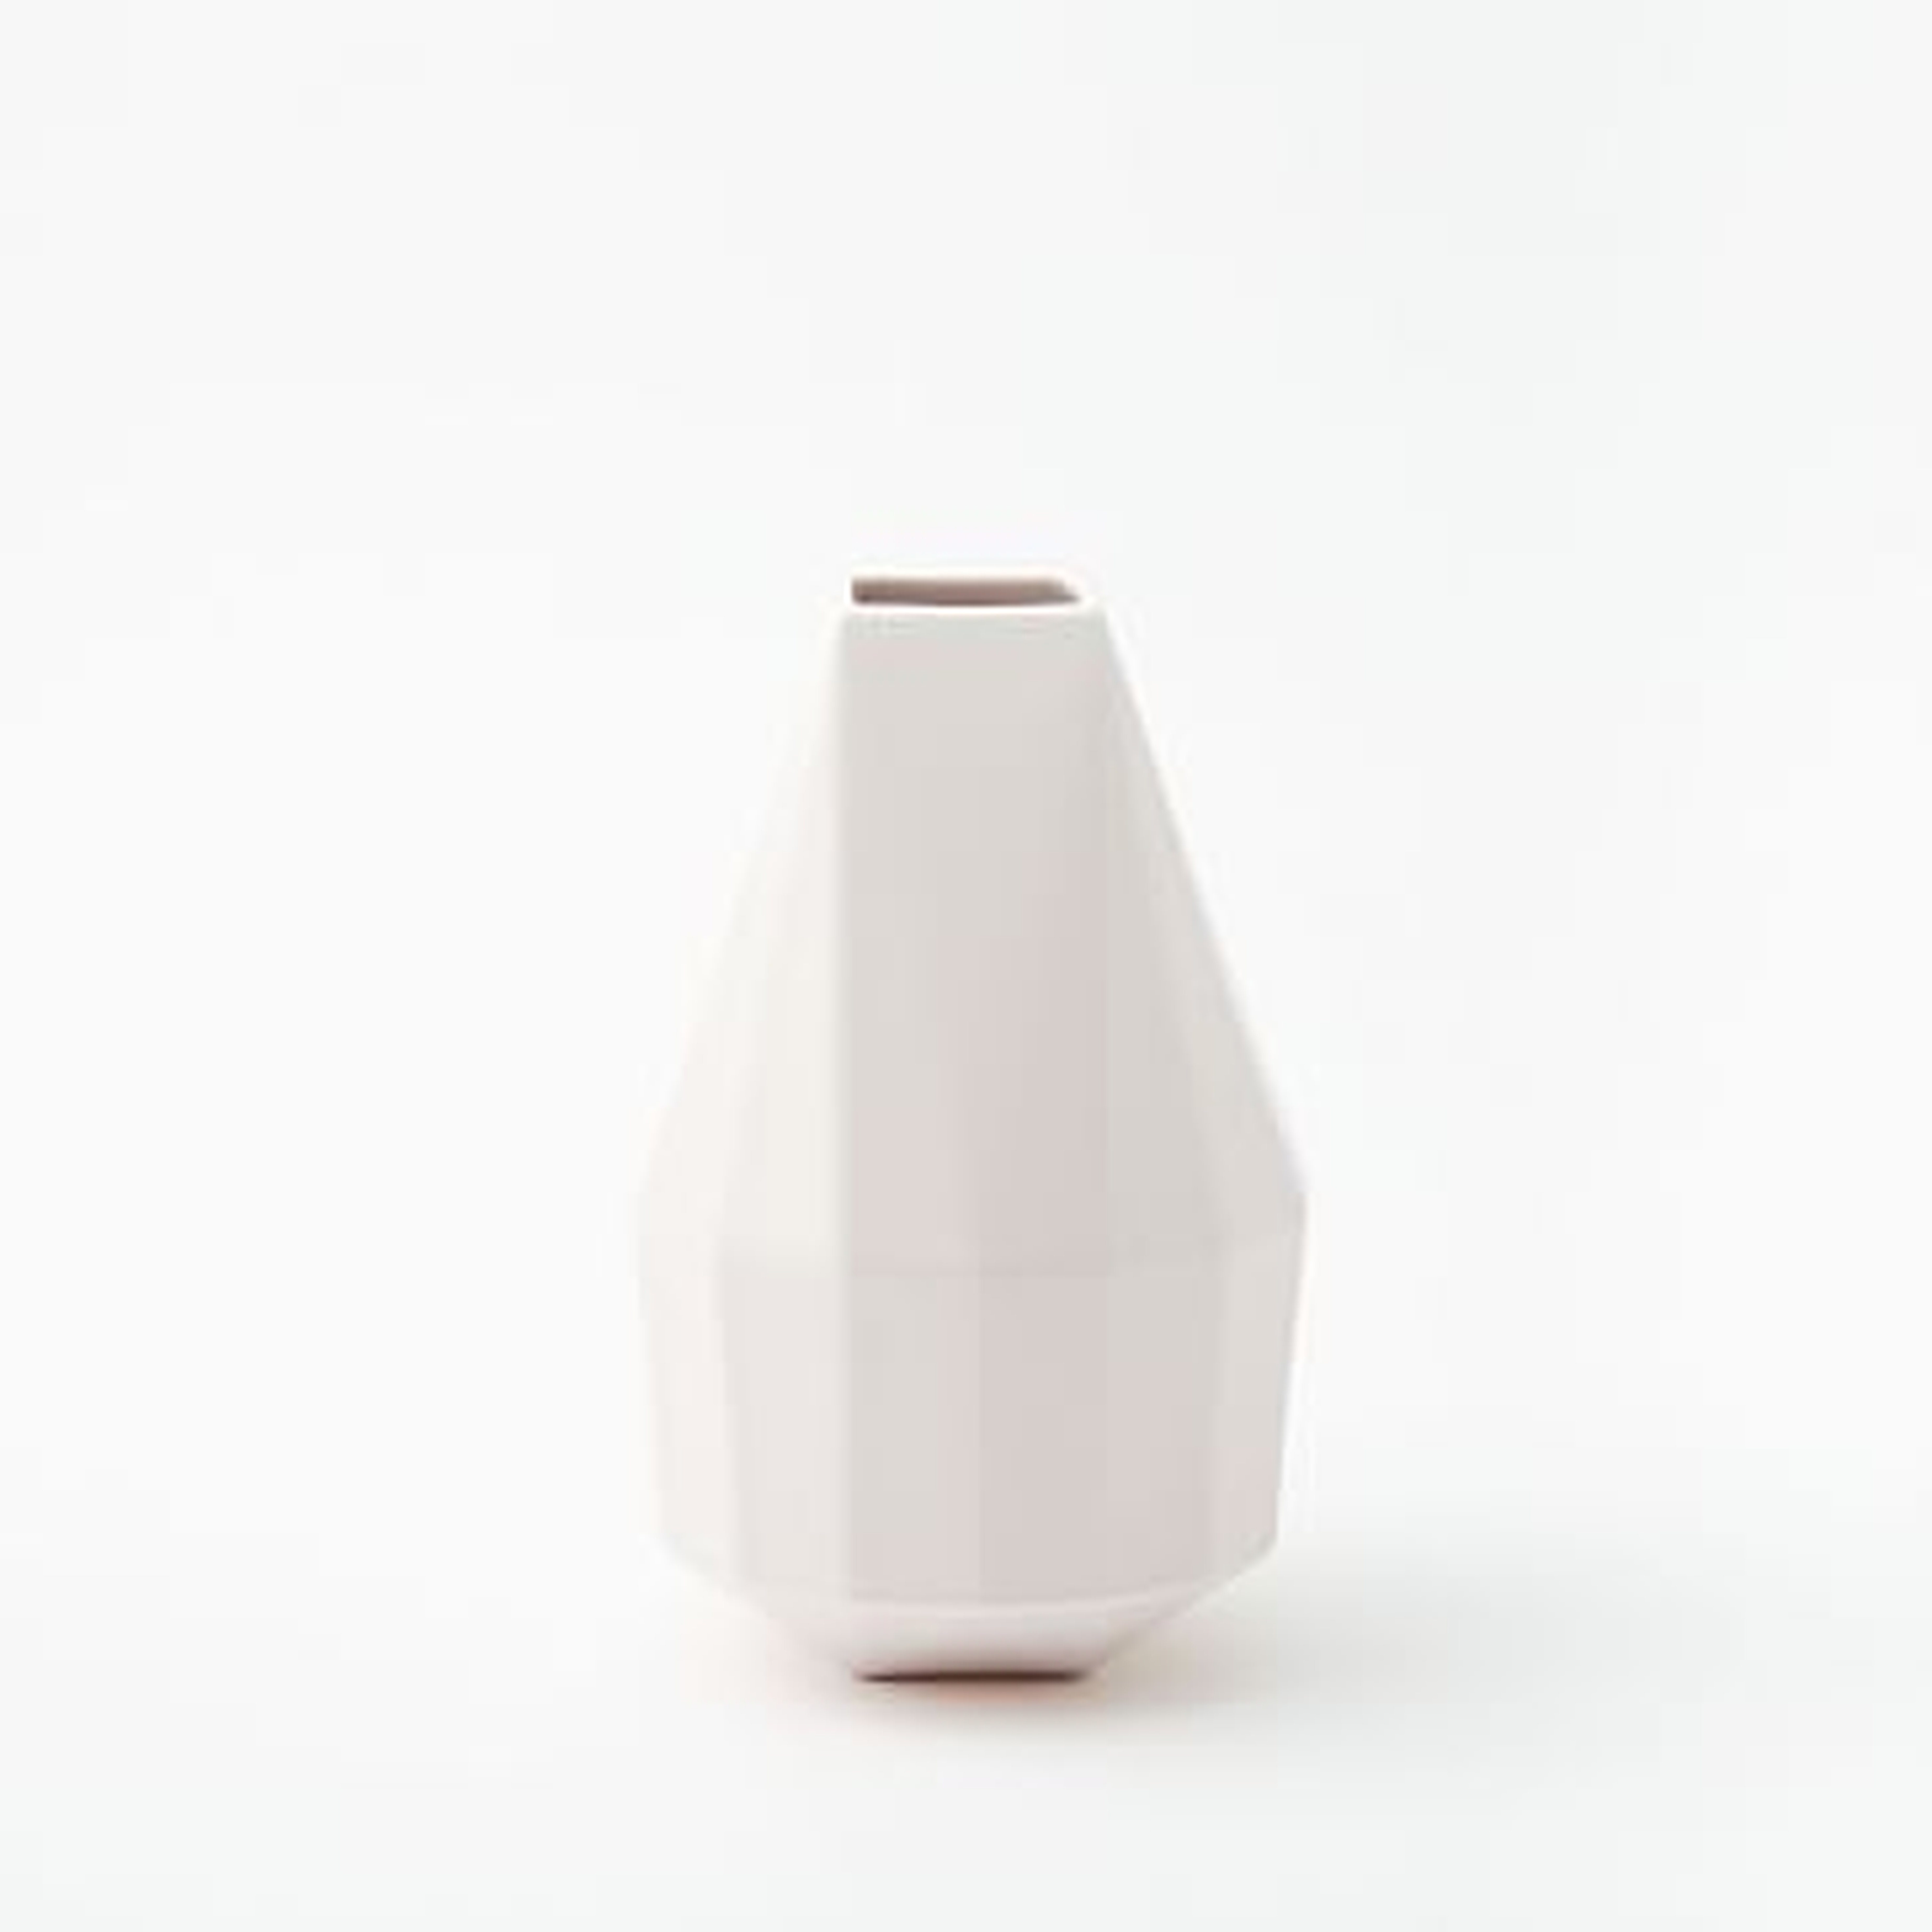 Faceted Porcelain Vase, 9.5", Porcelain White - West Elm